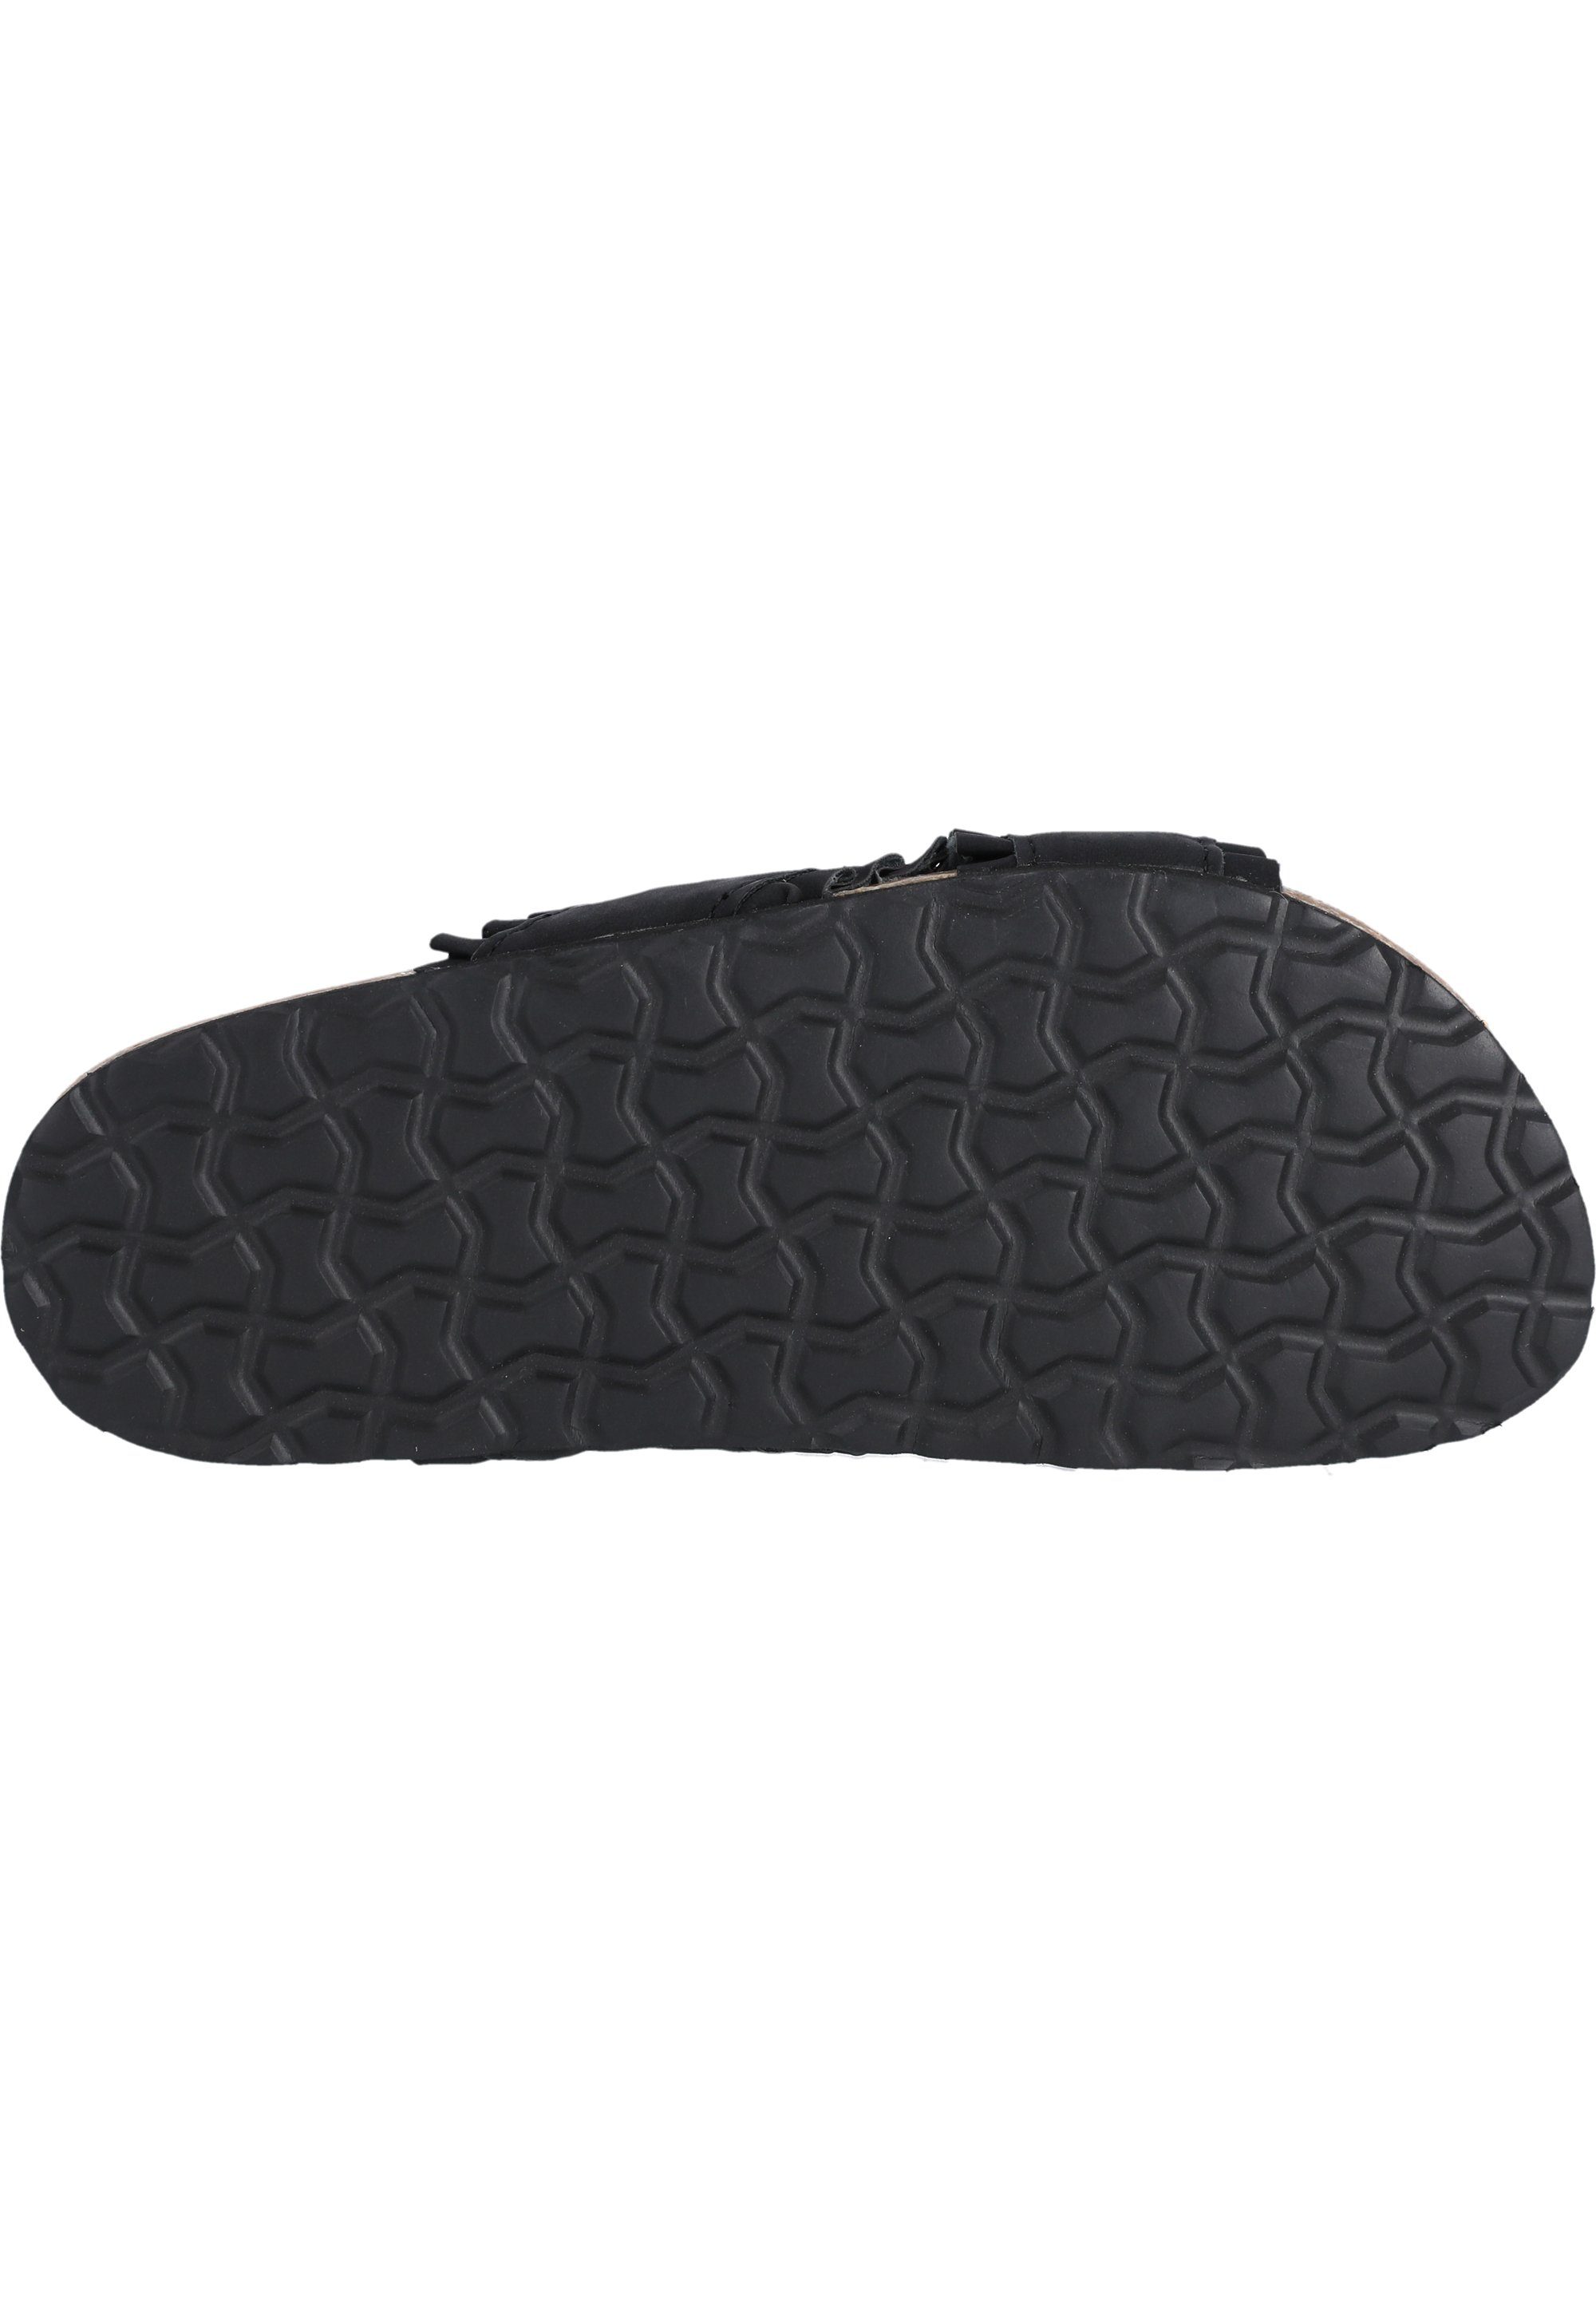 Rufalia CRUZ schwarz Fußbett weichem mit Sandale